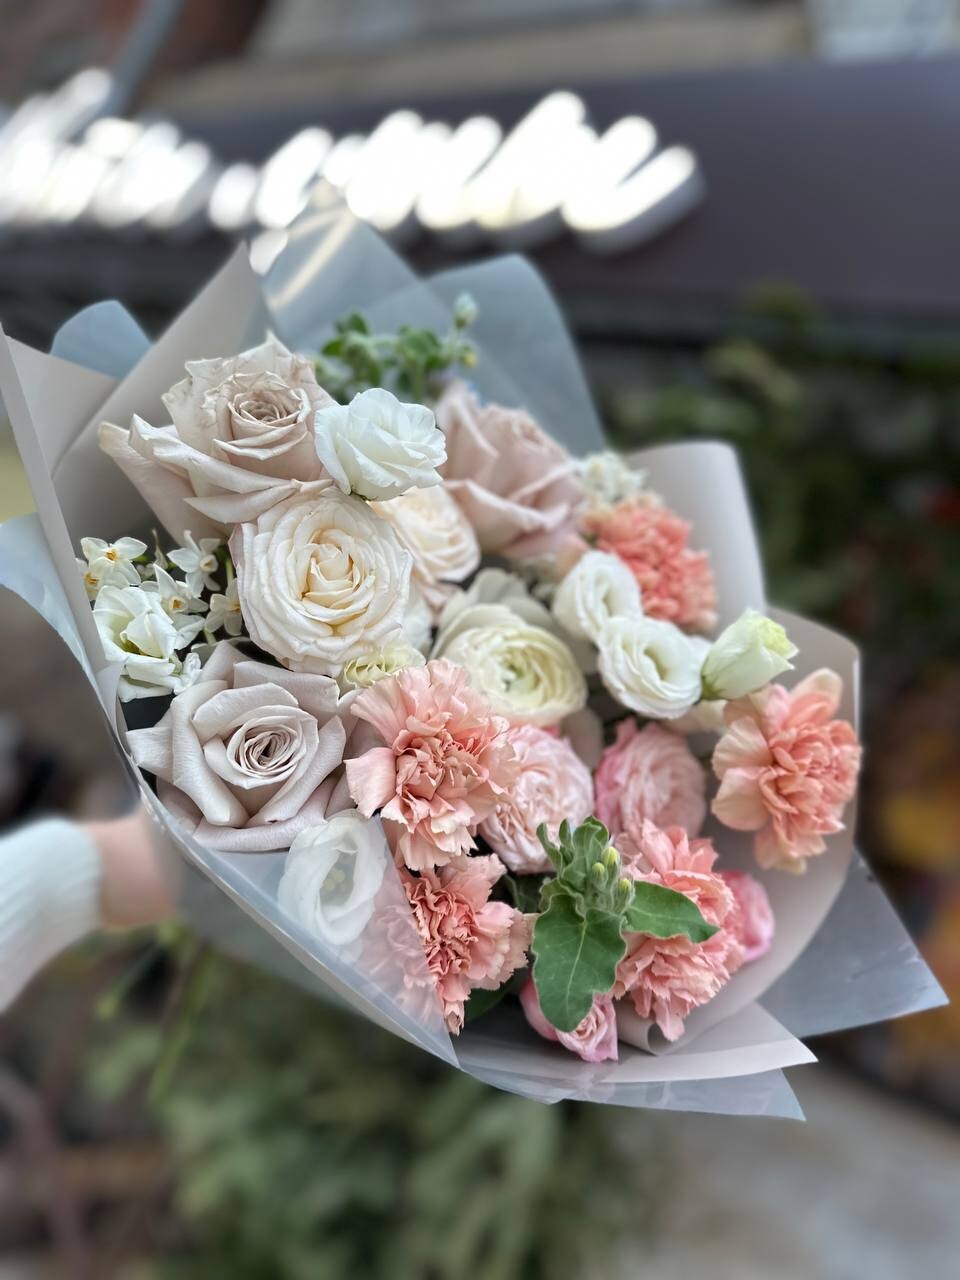 “Волшебство цветов в вашем городе: доставка букетов от «Цветы Луны» в Саратове”